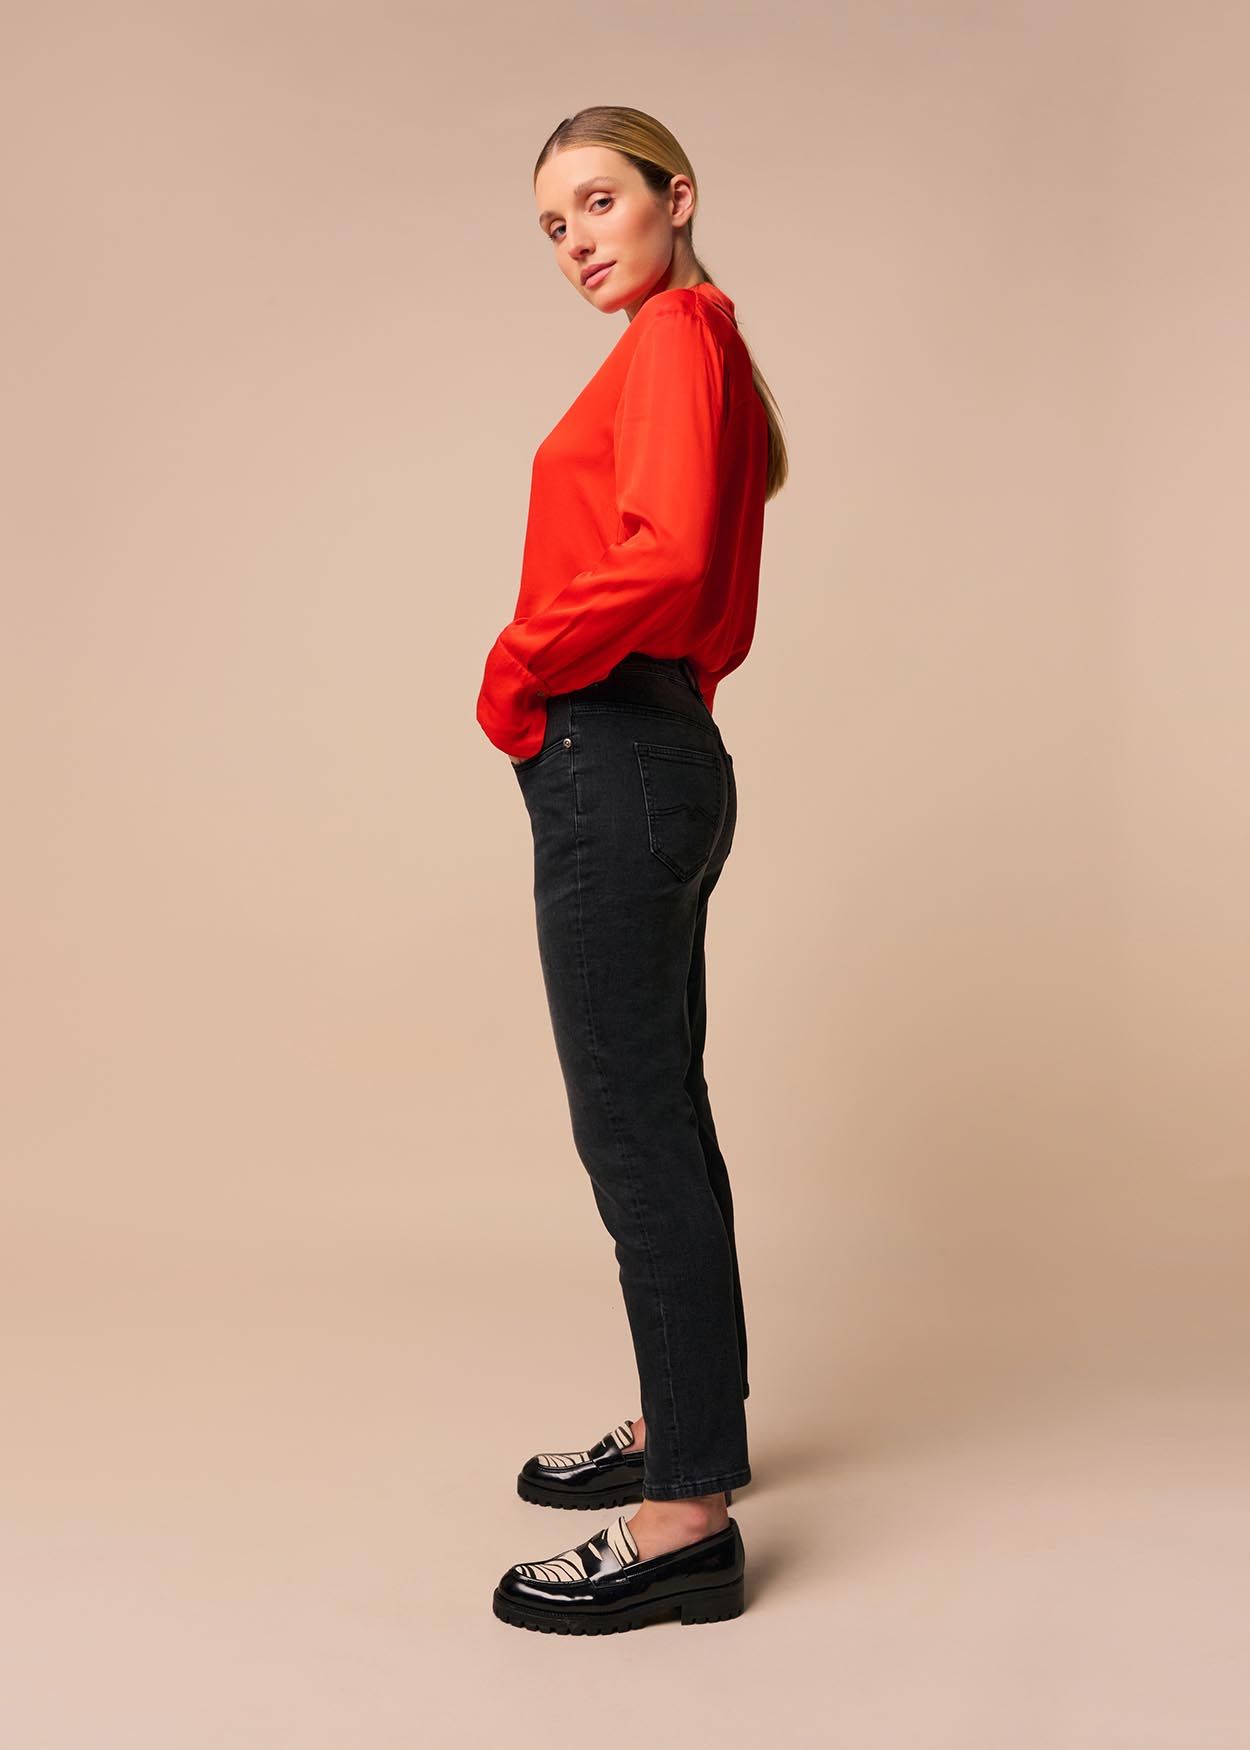 CAROLE HUGO - Jeans black denim Taille Moyenne | Mom Fit - Entrejambe Haute | Taille en pouces Cimarron